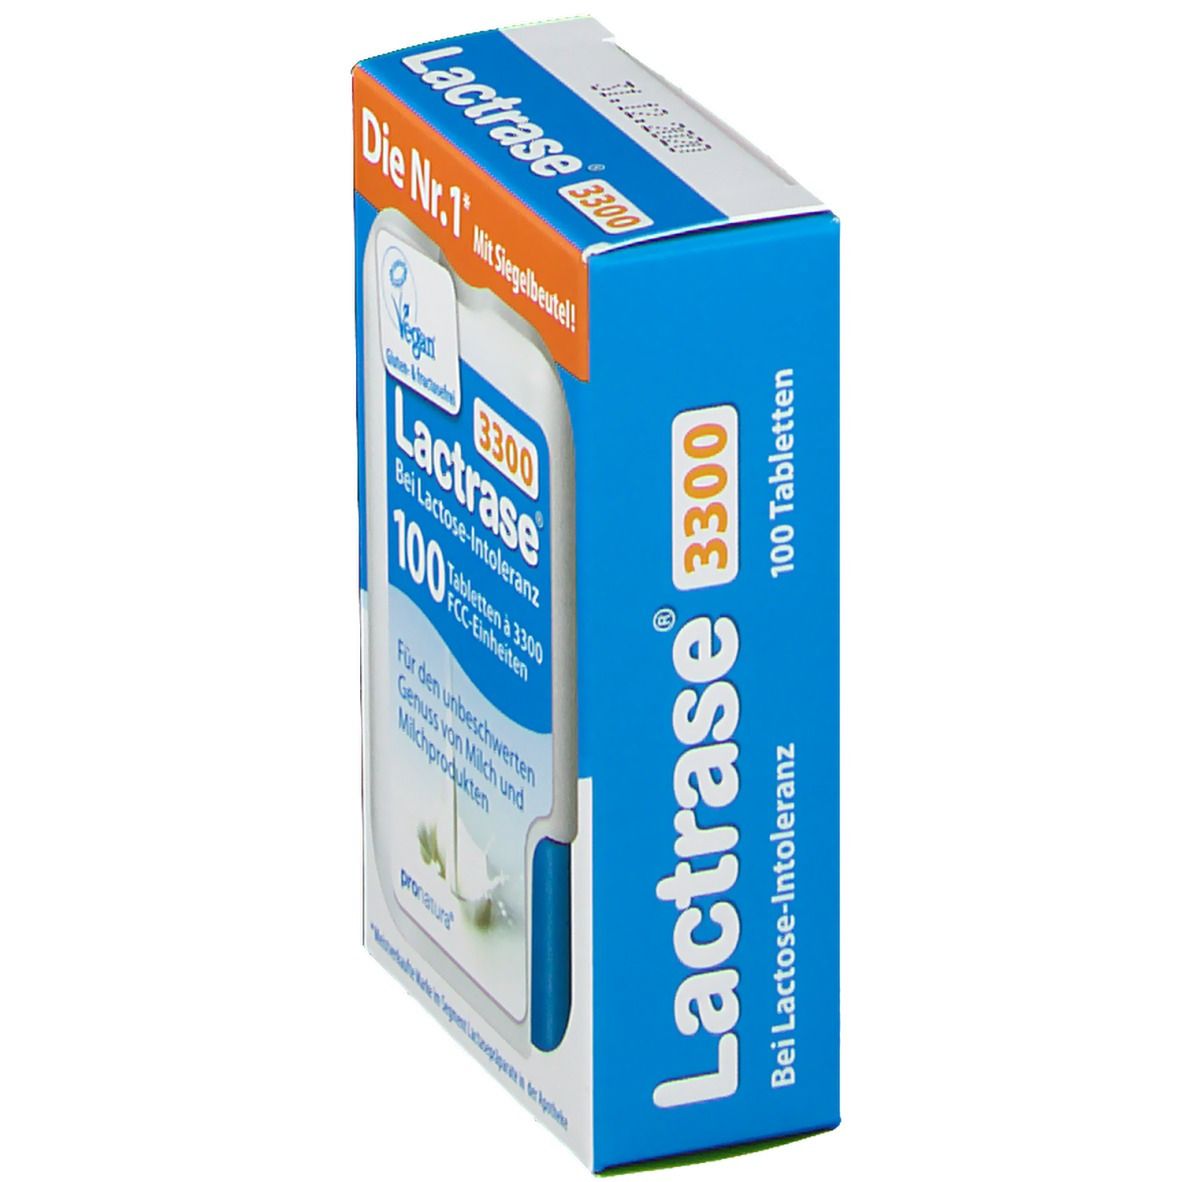 Lactrase® 3300 FCC Klickspender